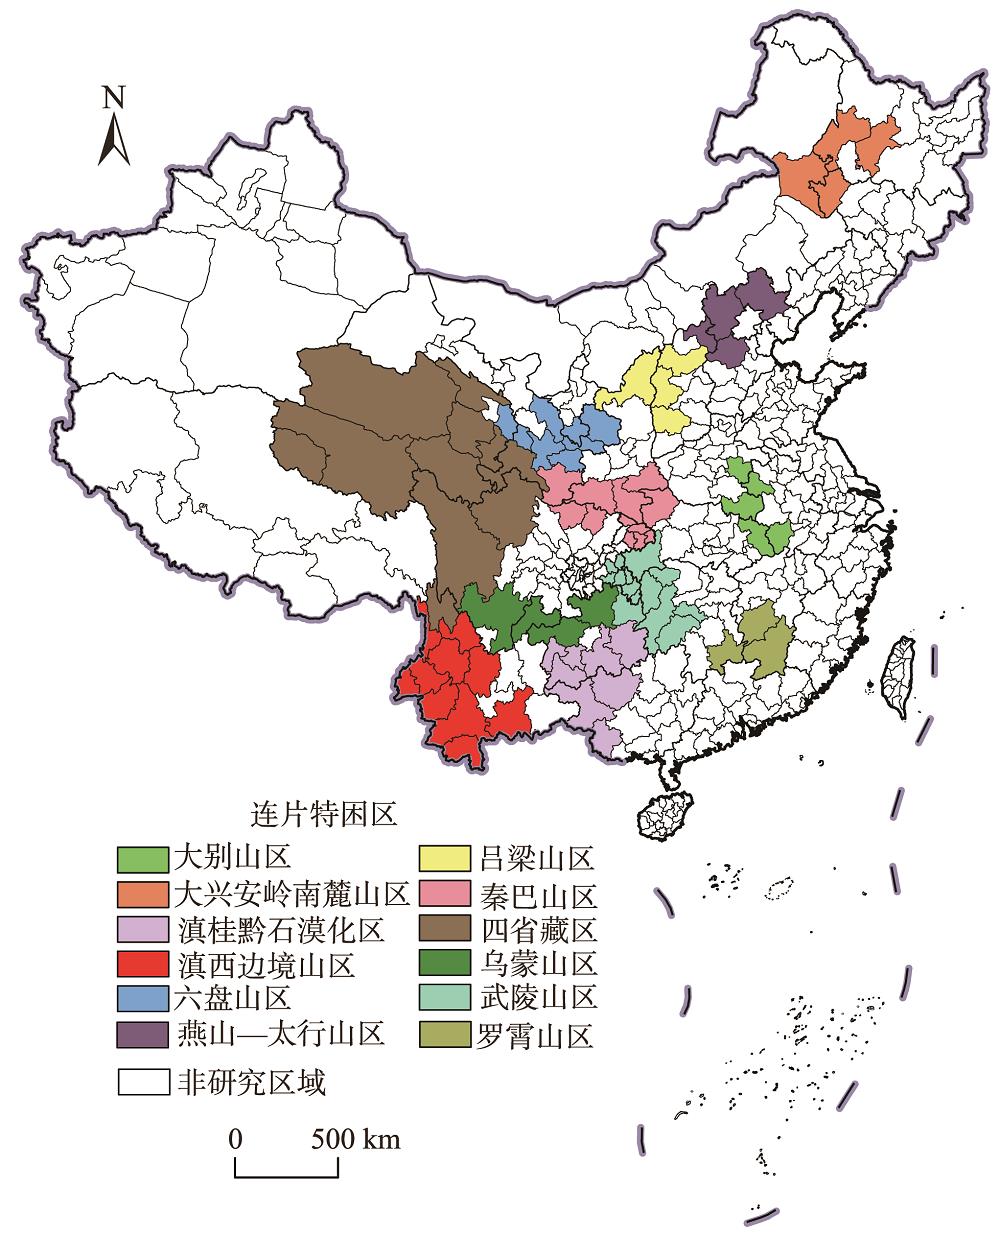 研究区域示意图注:该图基于自然资源部标准地图服务网站下载的审图号为GS(2019)1815号的中国标准地图绘制,底图无修改,下同。